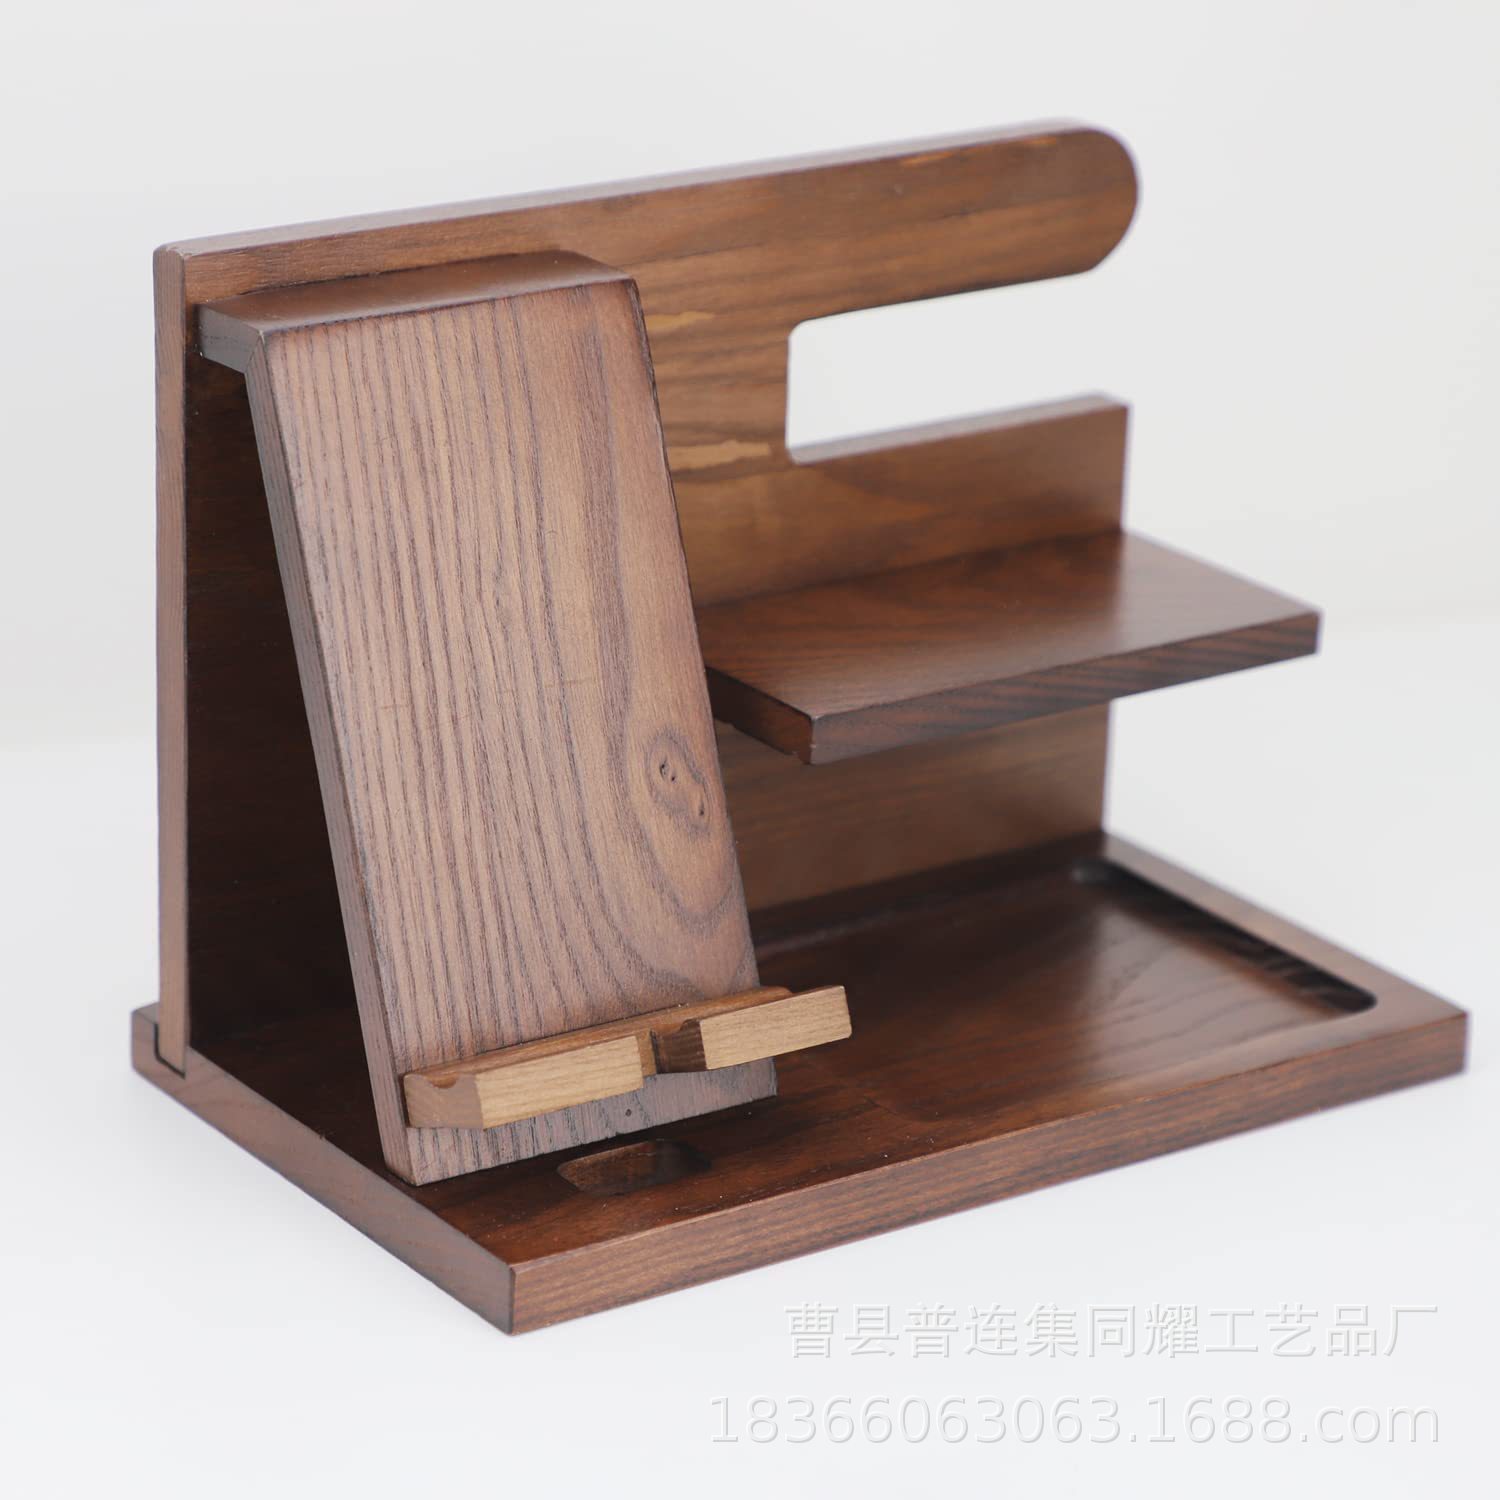 木质手机支架钥匙置物架创意桌面饰品收纳架充电支架展示架整理架